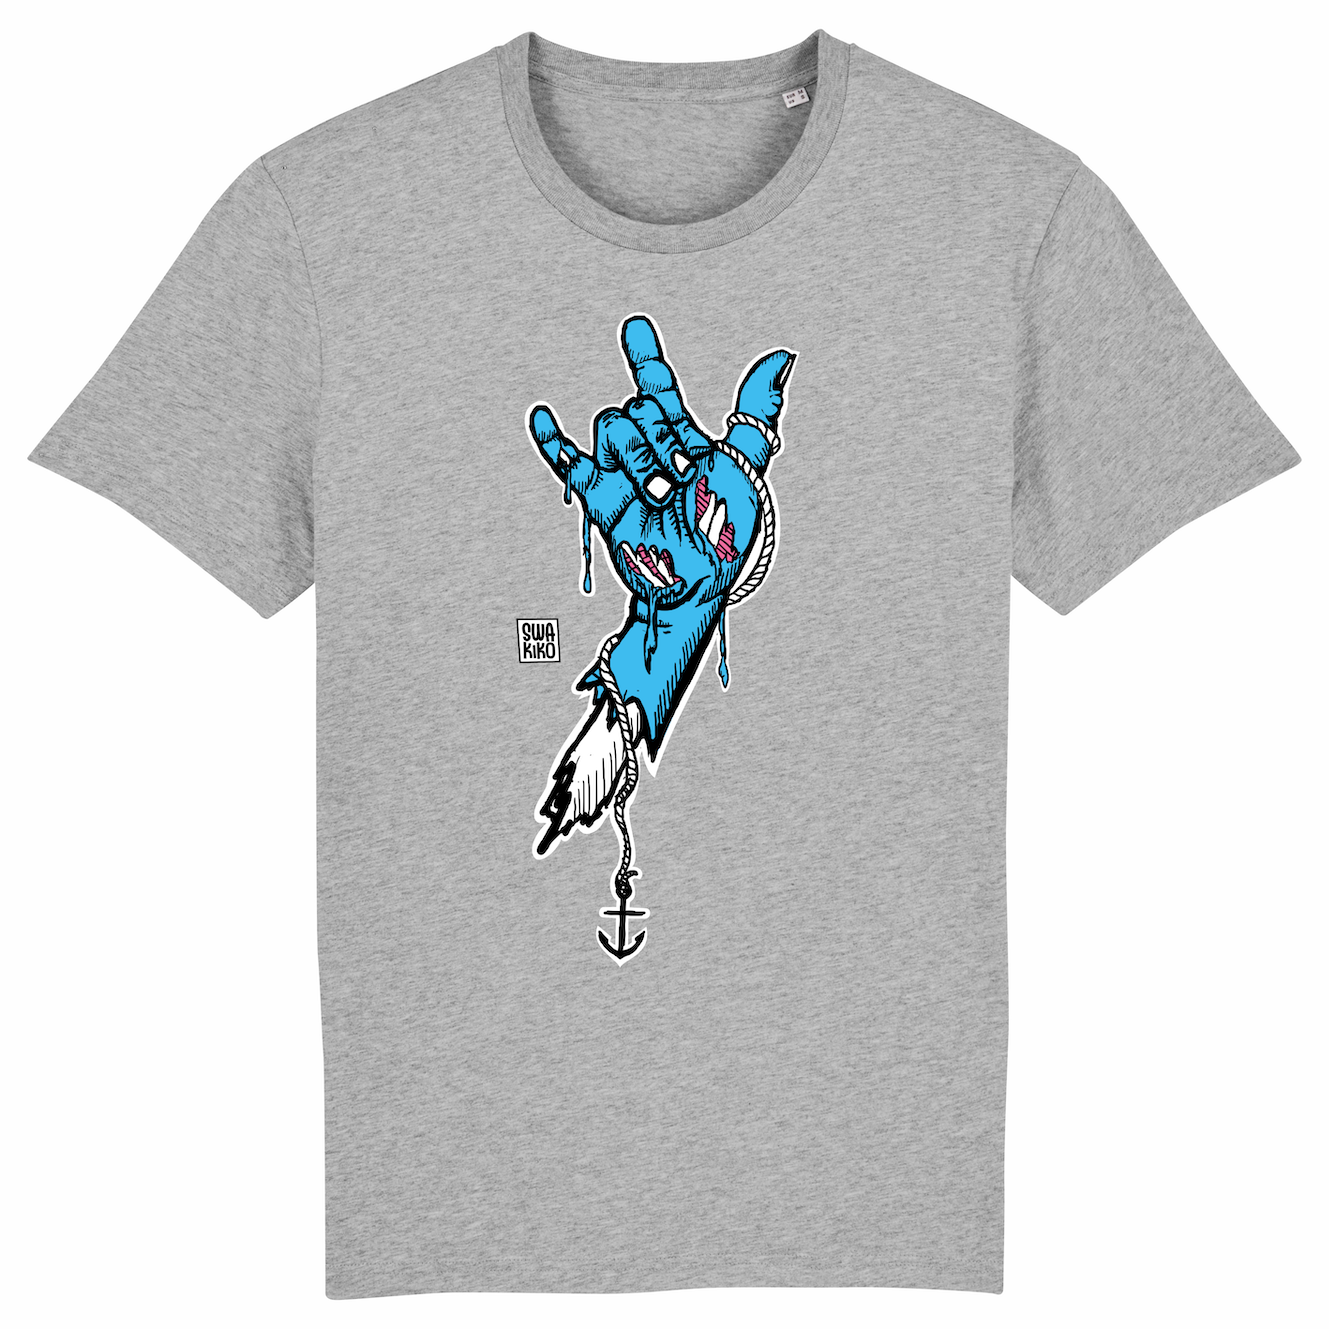 Surf t-shirt men grey, rock hand blue